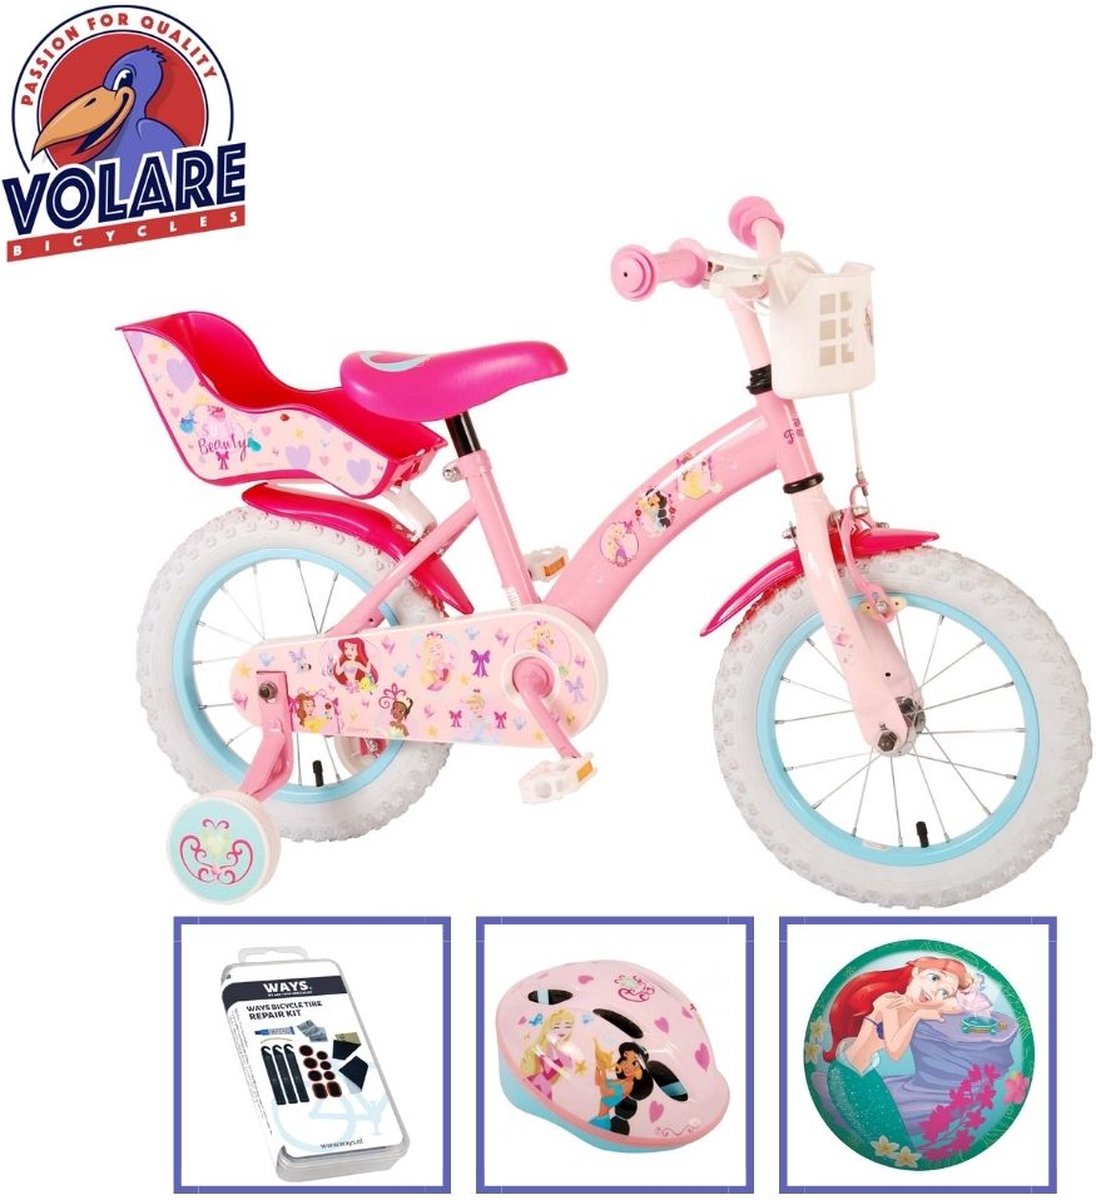 Volare Kinderfiets Disney Princess - 14 inch - Roze - Met fietshelm en accessoires